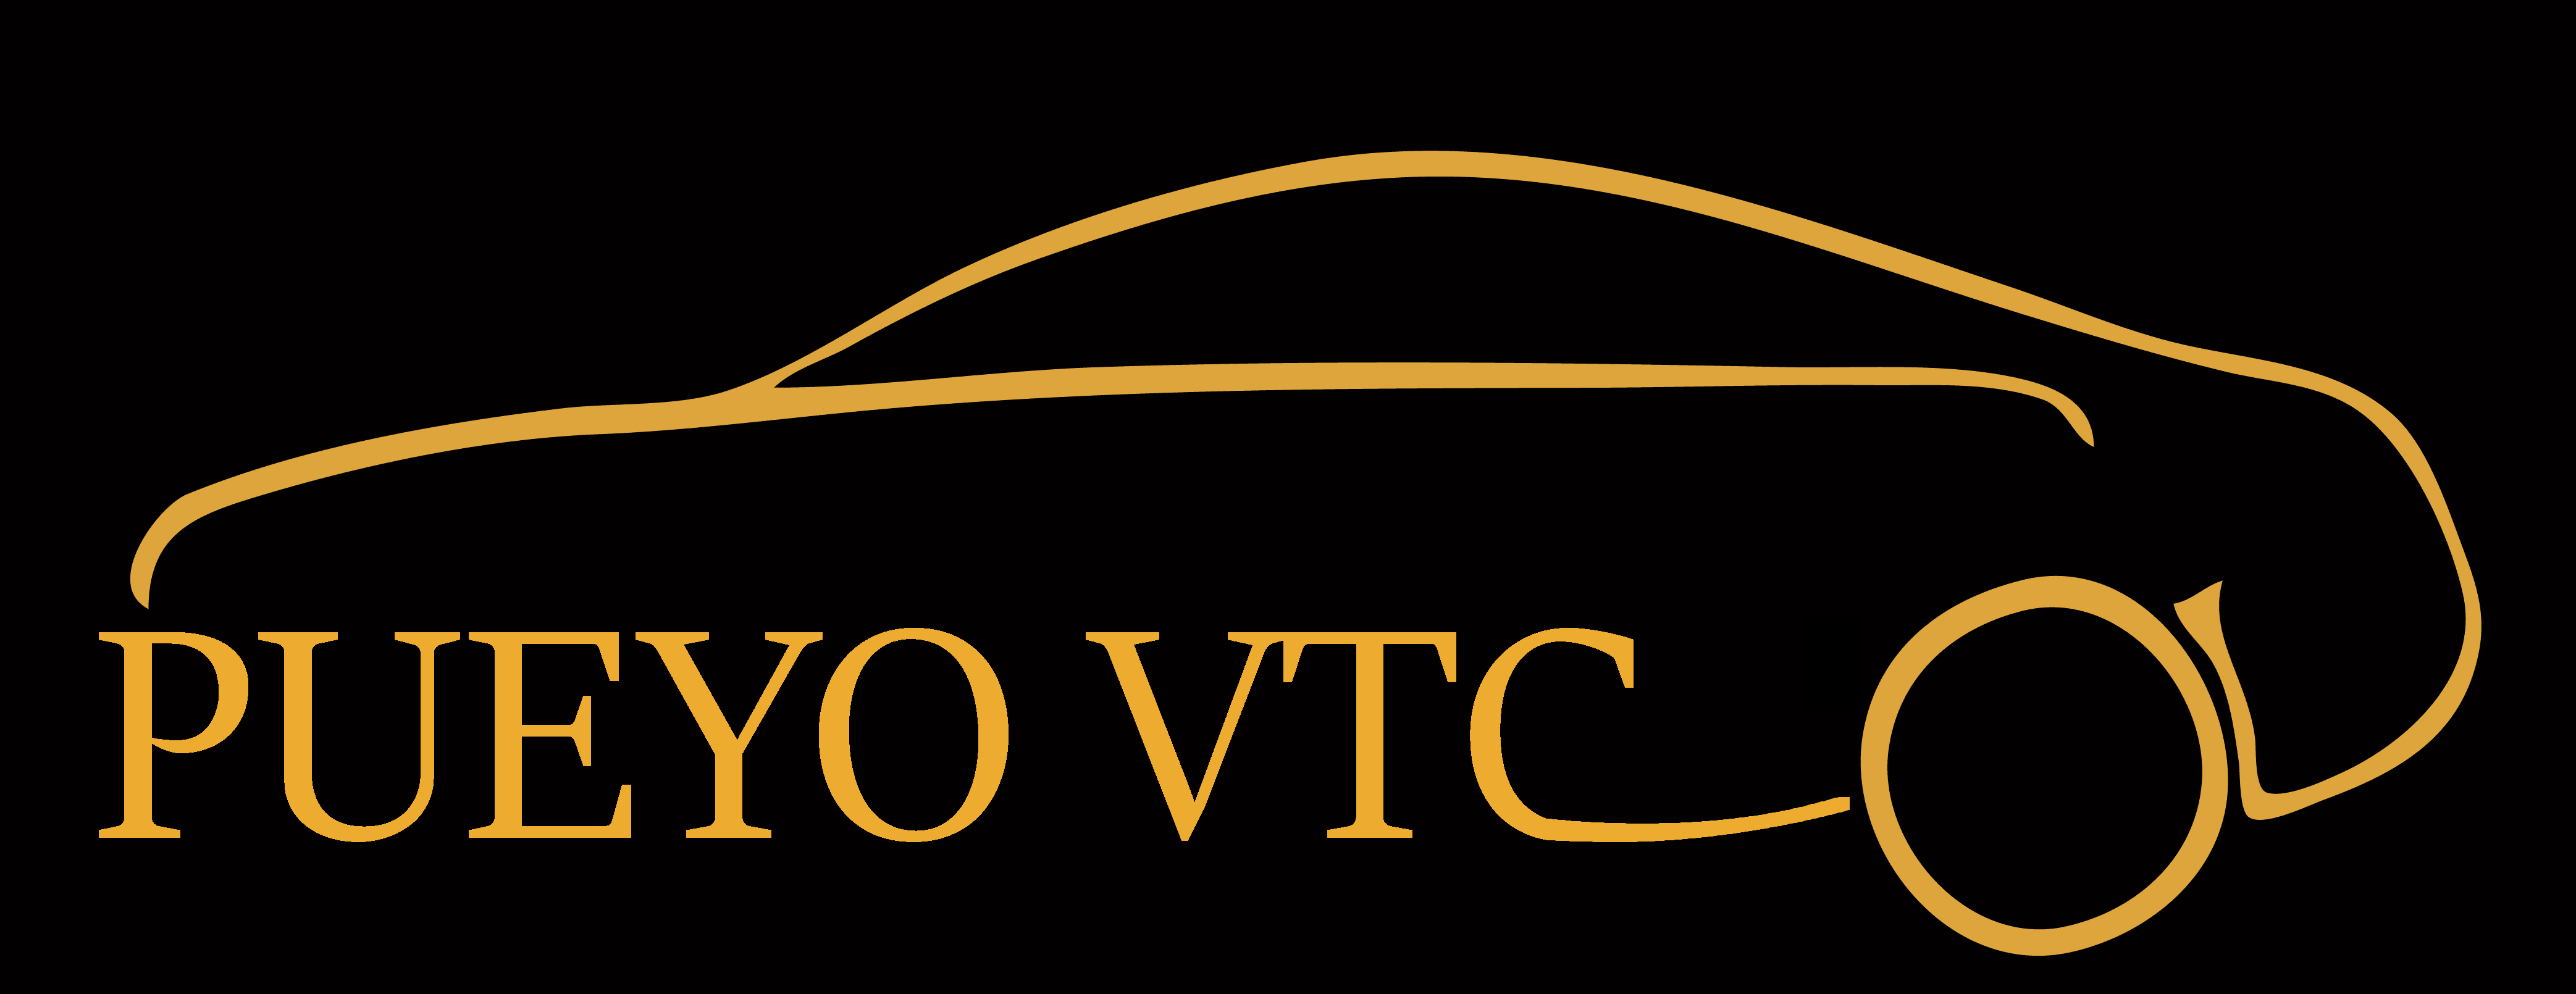 PUEYO VTC - Chauffeur VTC à Lavaur Toulouse